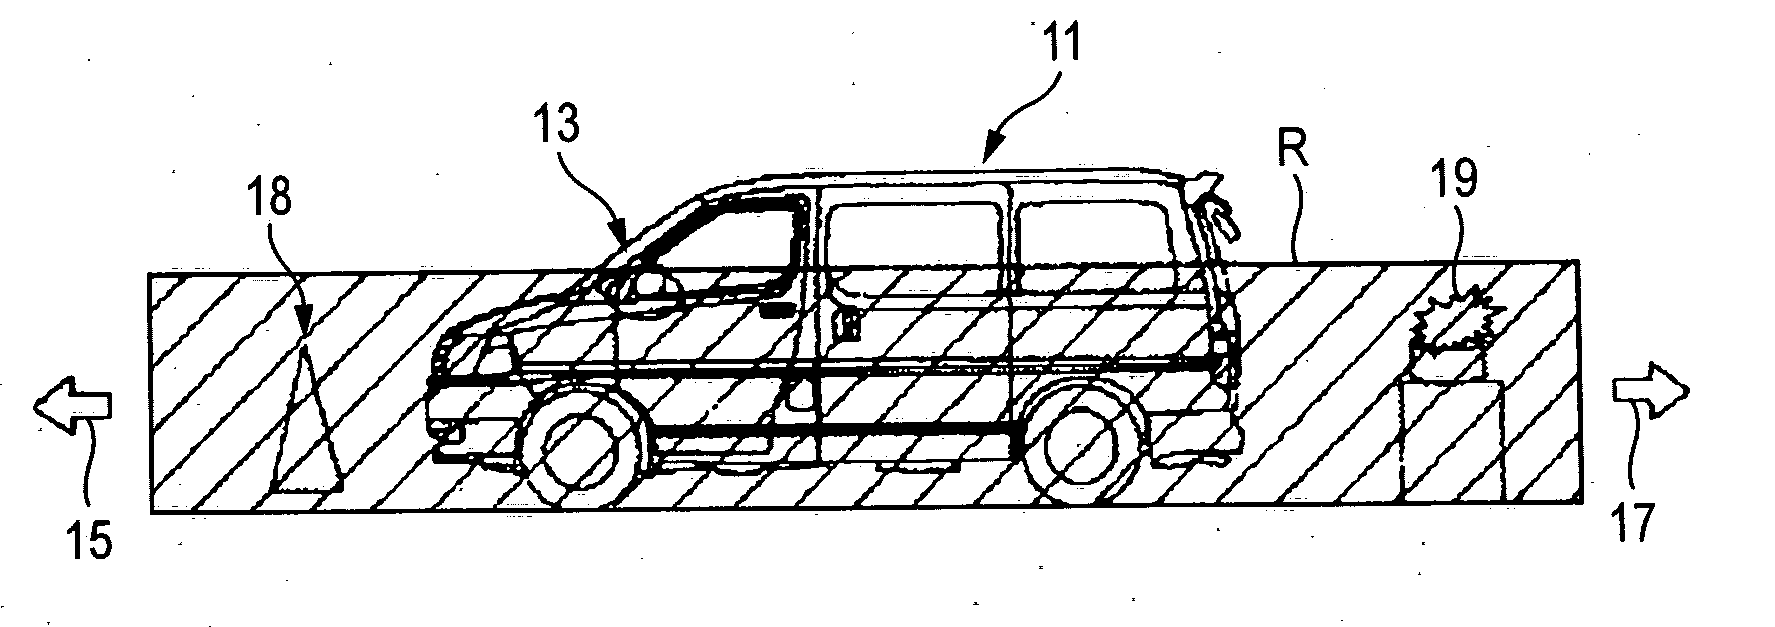 Vehicle peripheral visual confirmation apparatus